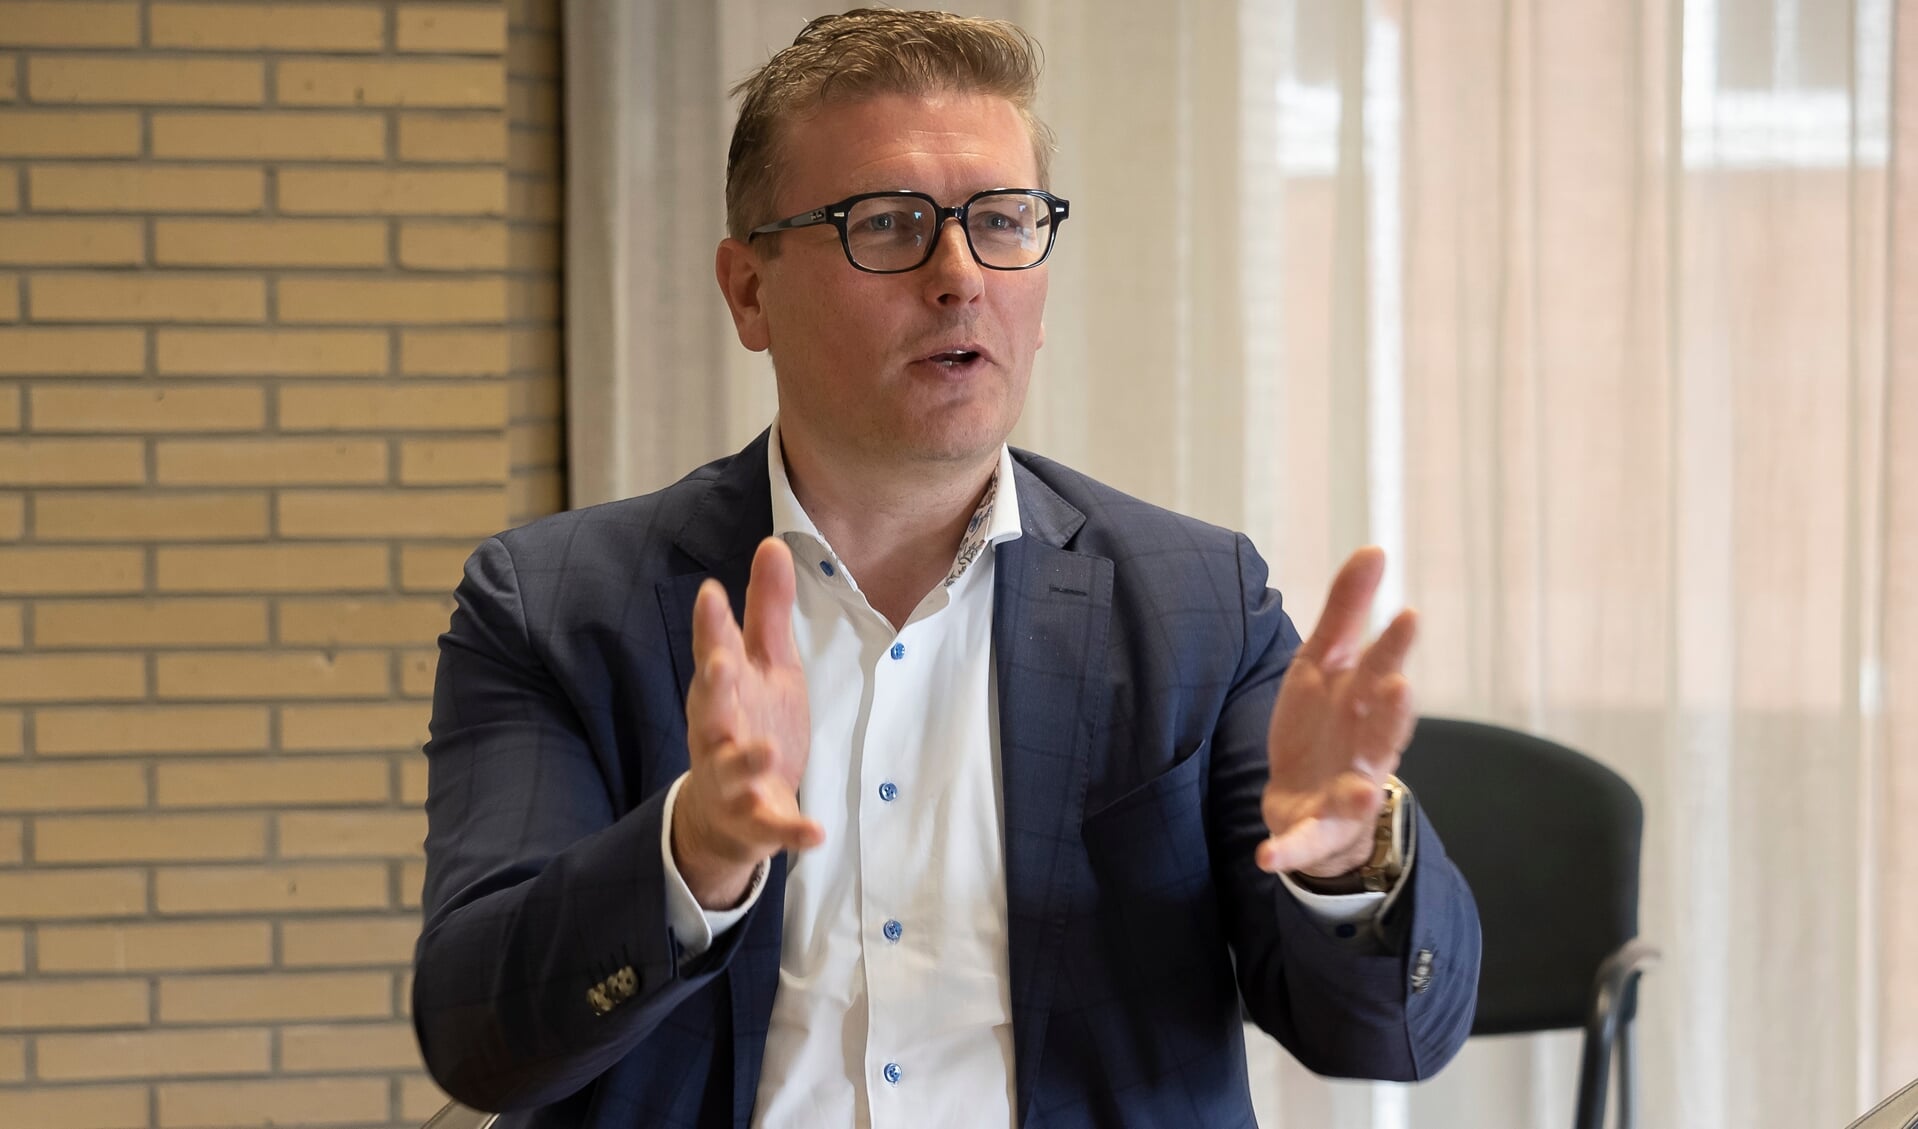 Marco Oosterwijk is niet als wethouder beschikbaar voor het volgende Ridderkerkse college